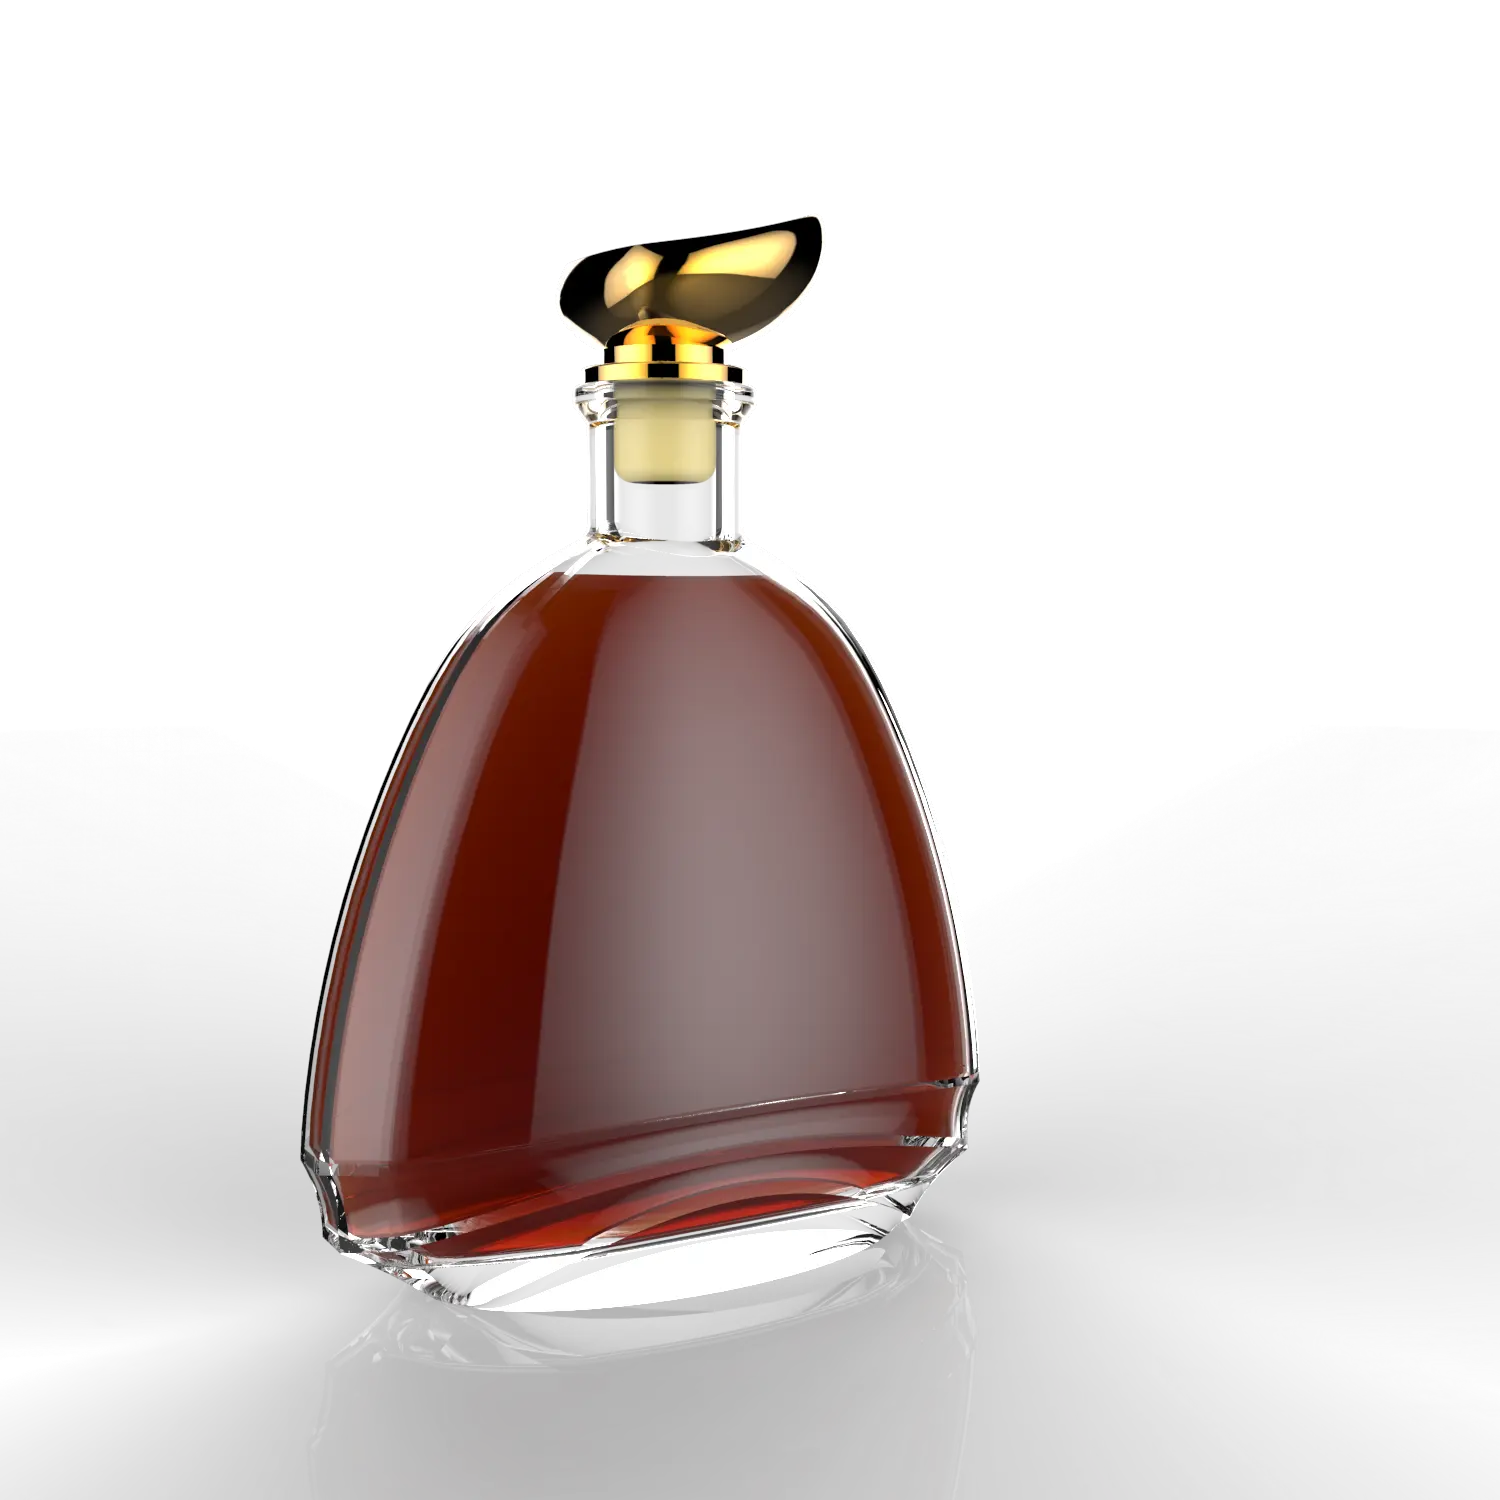 glass bottle manufacture design liquor bottle for brandy gin whisky rum vodka tequila glass bottle